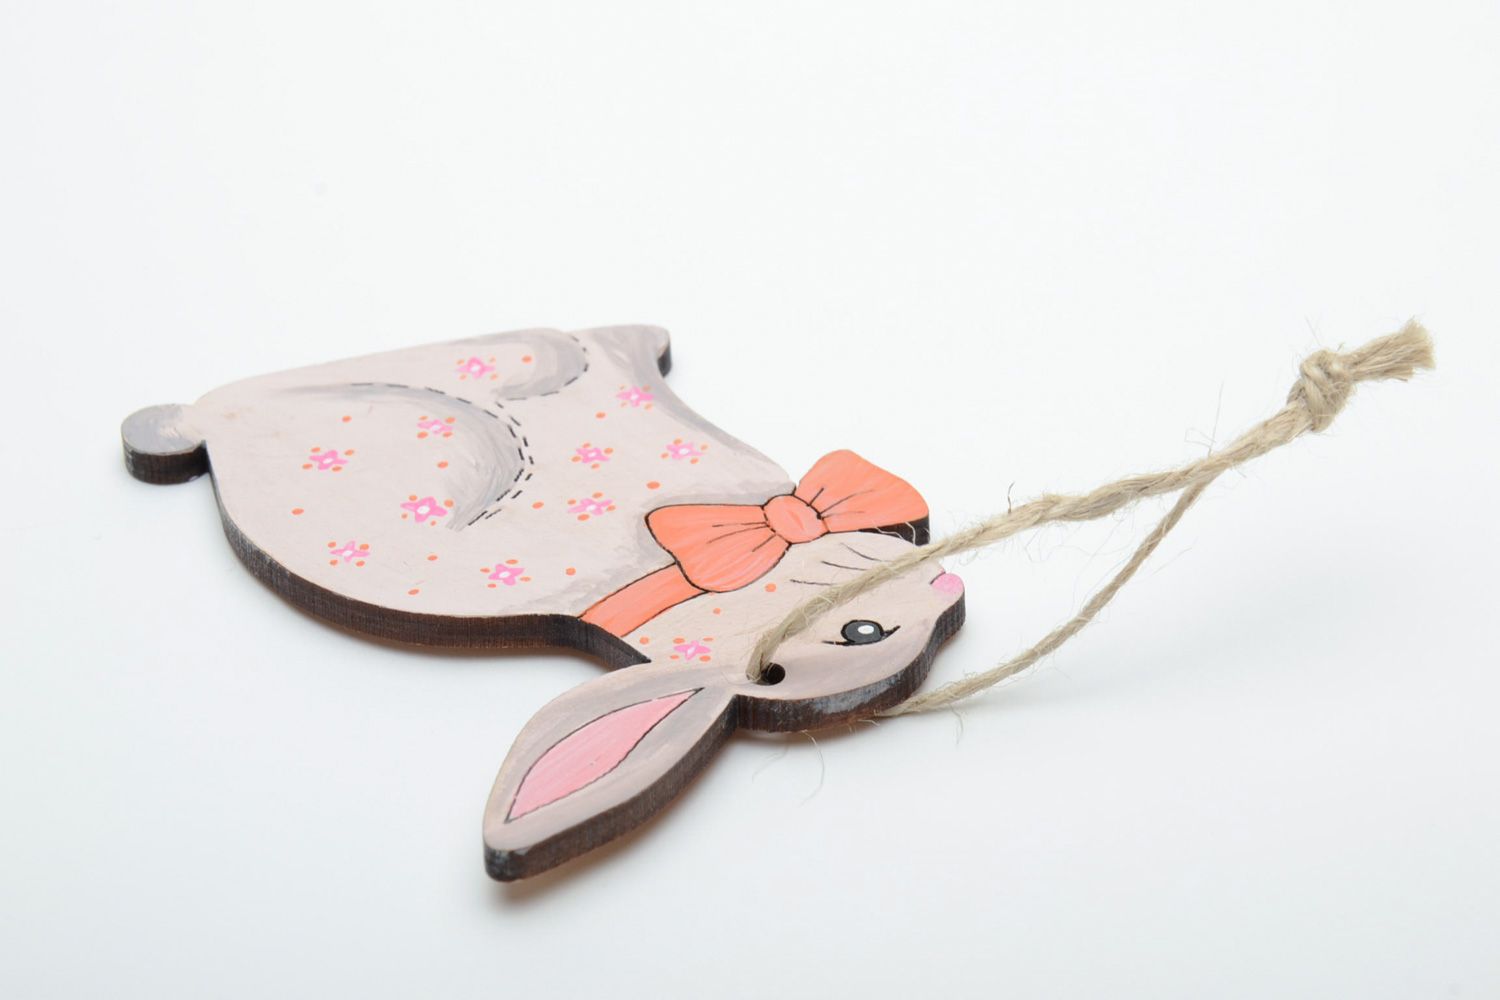 Фанерная интерьерная подвеска пасхальная в виде кролика с росписью фото 4